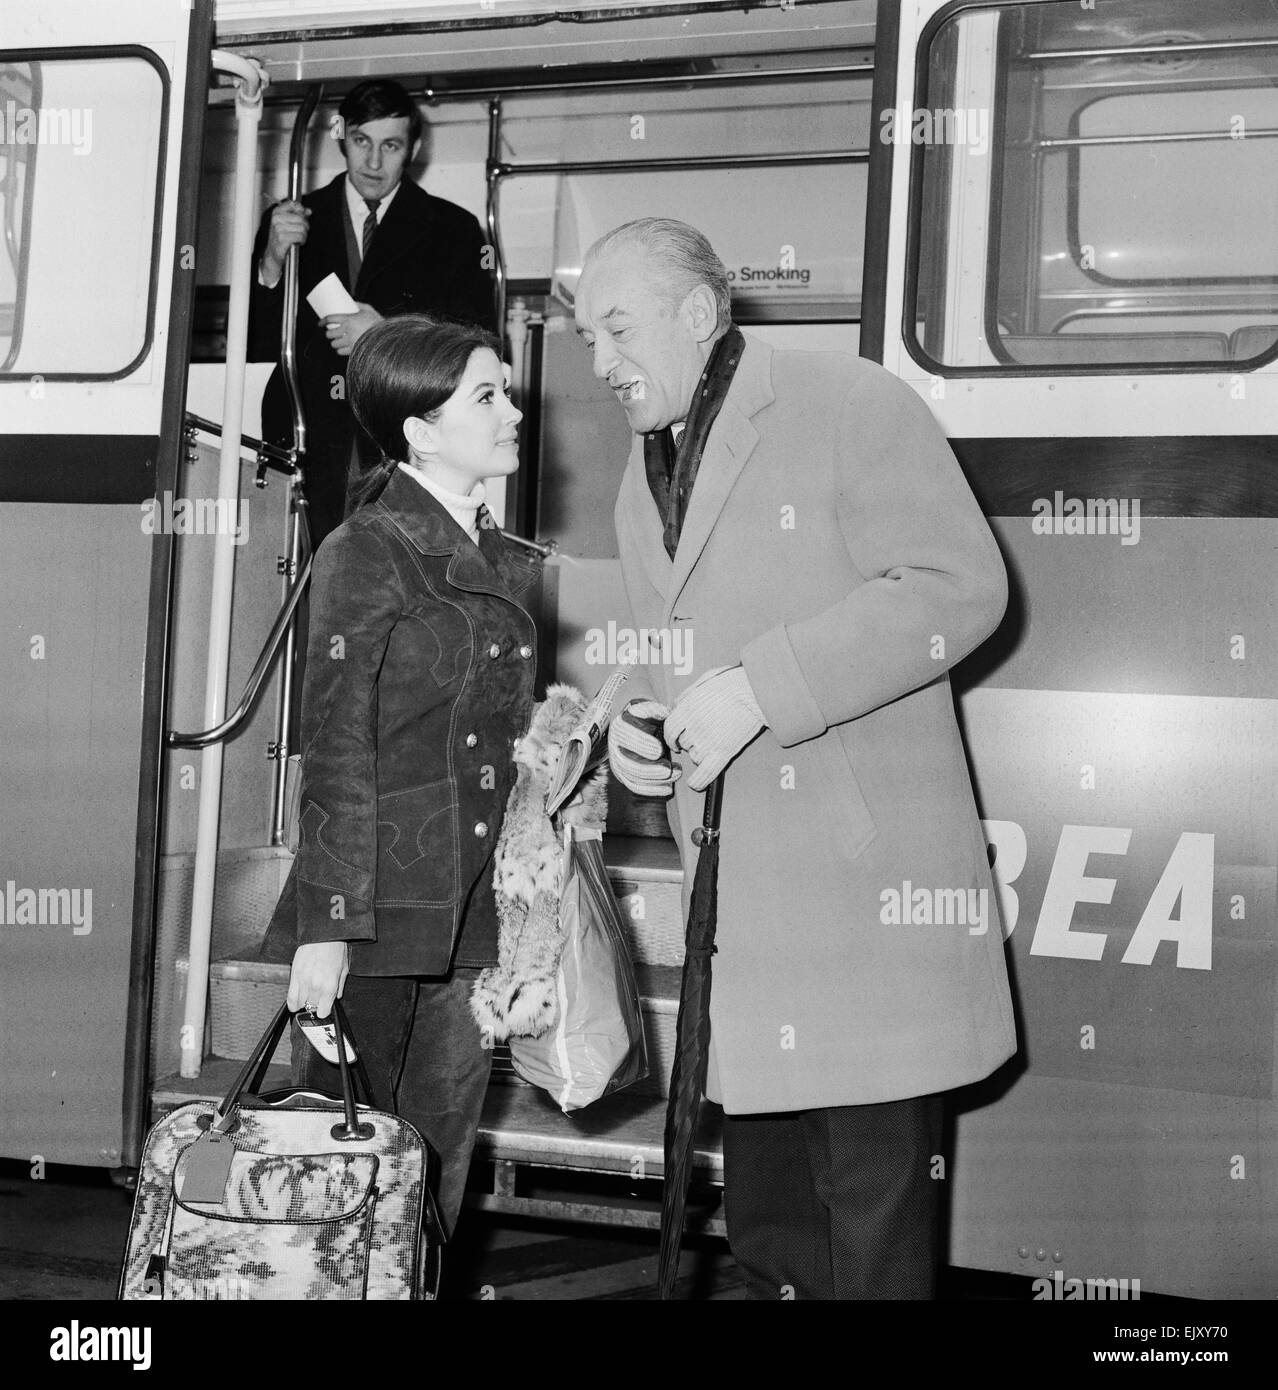 Barbara Parkins, televisione & film attrice, raffigurato in arrivo all'Aeroporto di Londra Heathrow il 21 febbraio 1969. Barbara è sul suo modo di Helsinki, per iniziare le riprese su 'Il Cremlino lettera", un thriller di spionaggio insieme all'altezza della guerra fredda. Raffigurata con l'attore George Sanders, che è anche la voce per lo stesso set di un film. È la prima volta che hanno incontrato, che è stato introdotto dai fotografi. Foto Stock